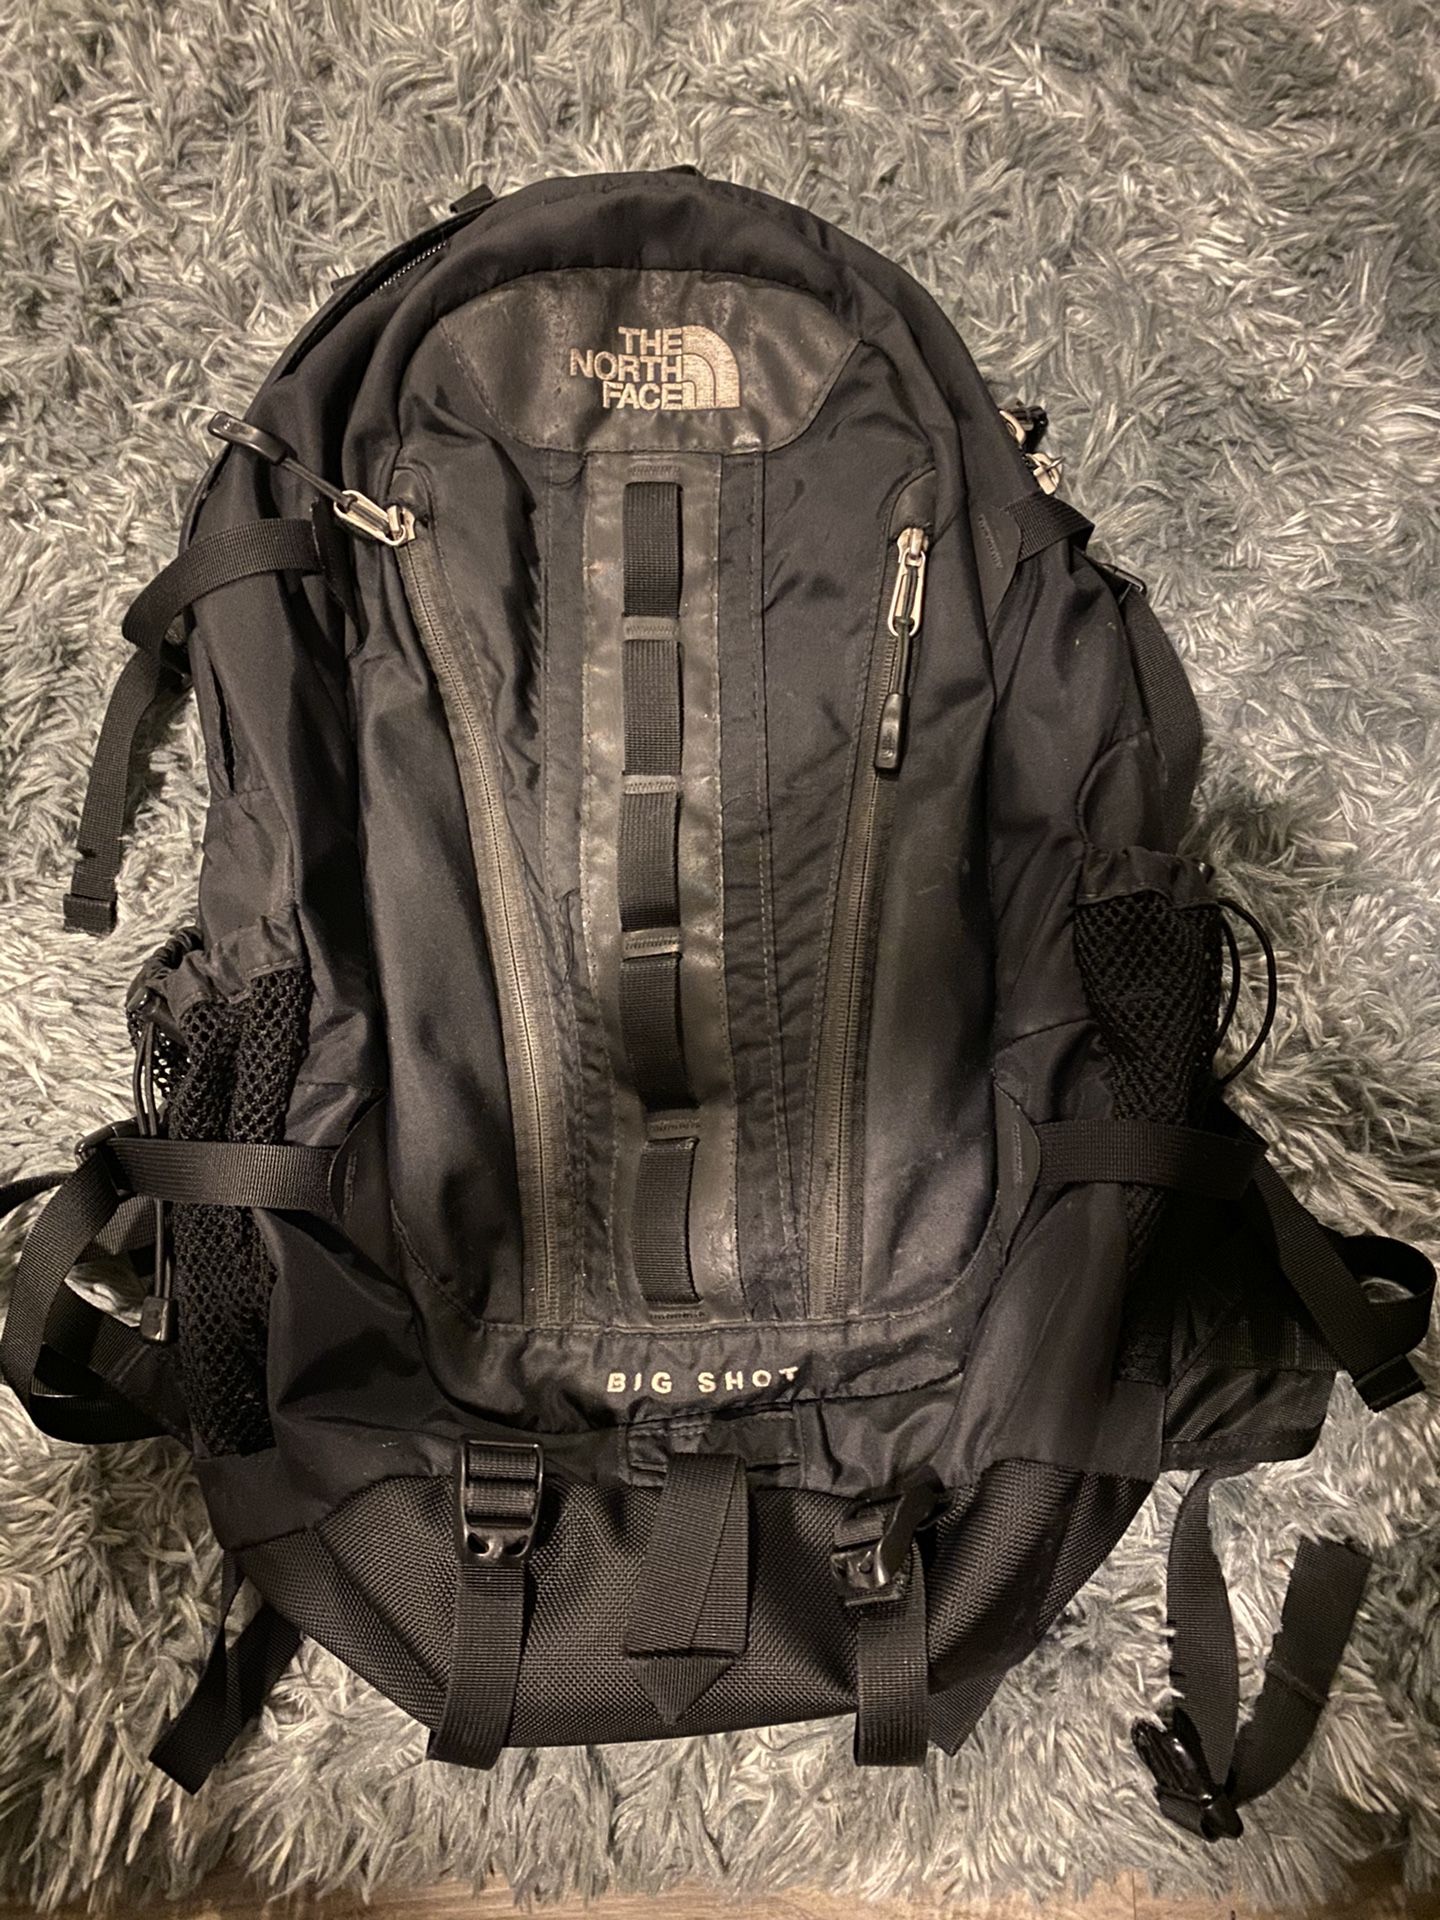 North Face (BigShot) Backpack